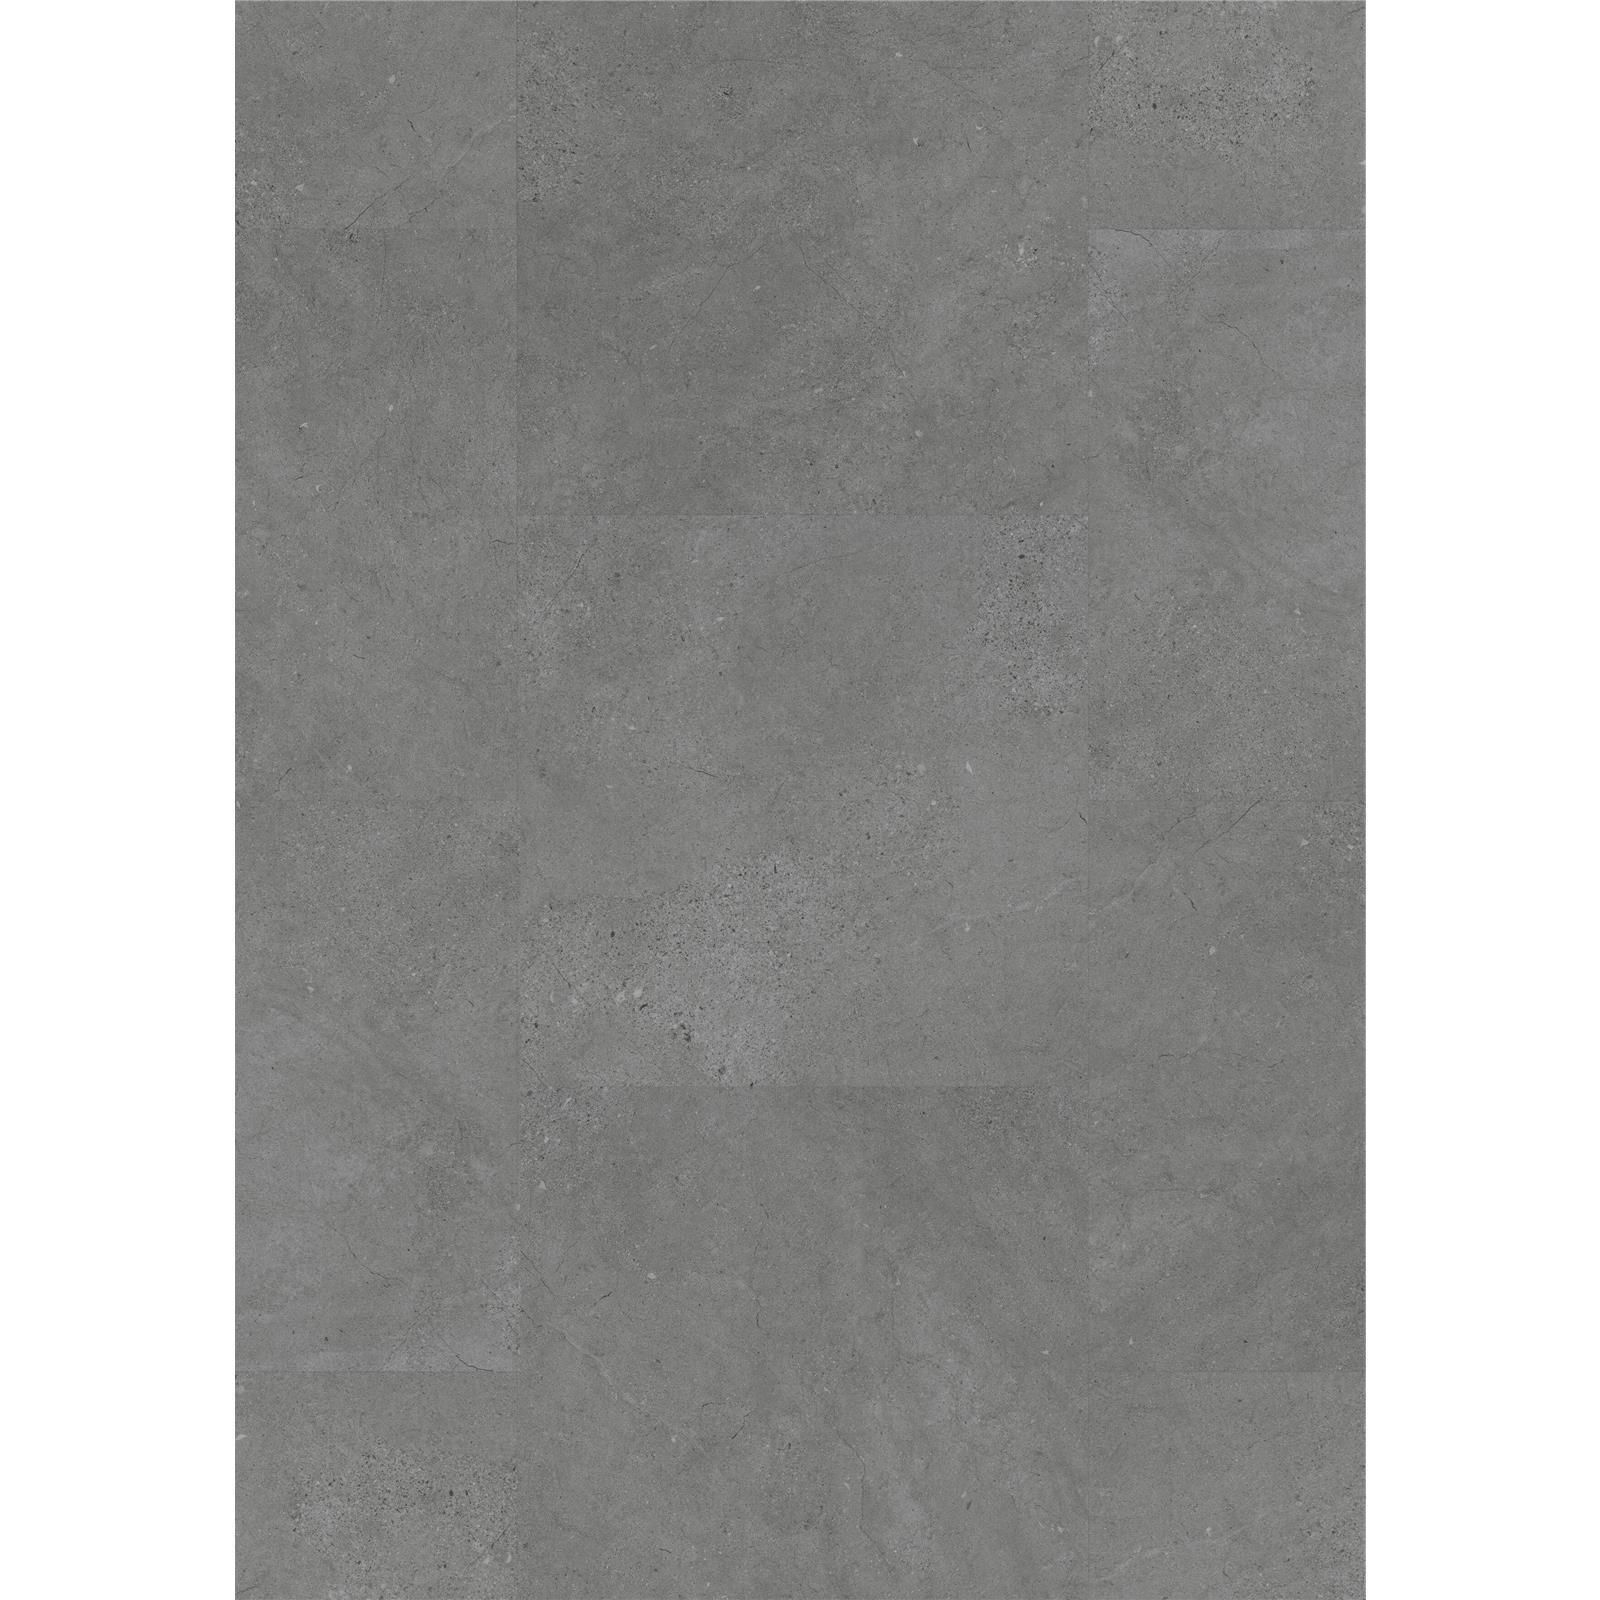 Designboden Dryback 2845 Dark Concrete - Planke 45,72 cm x 45,72 cm - Nutzschichtdicke 0,4 mm